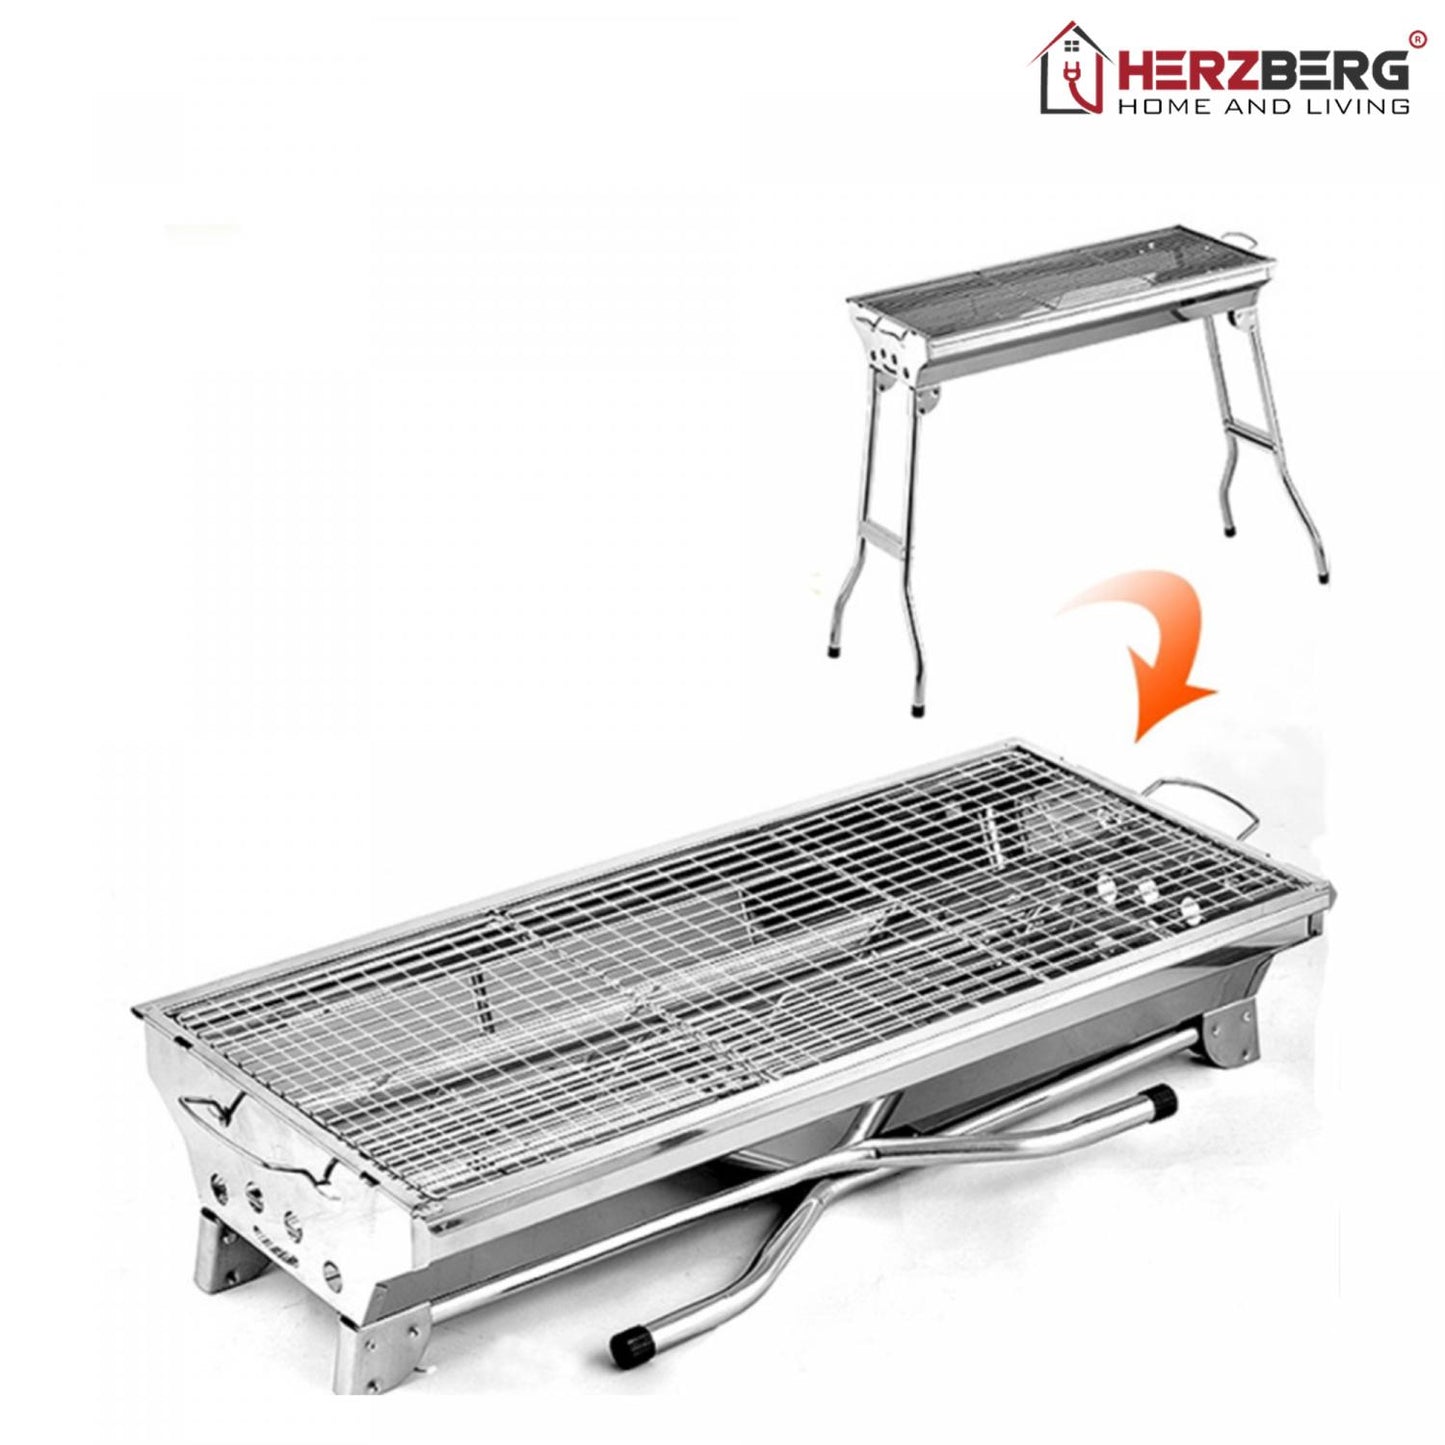 Barbecuegrill met draagtas van Herzberg HG-8112: